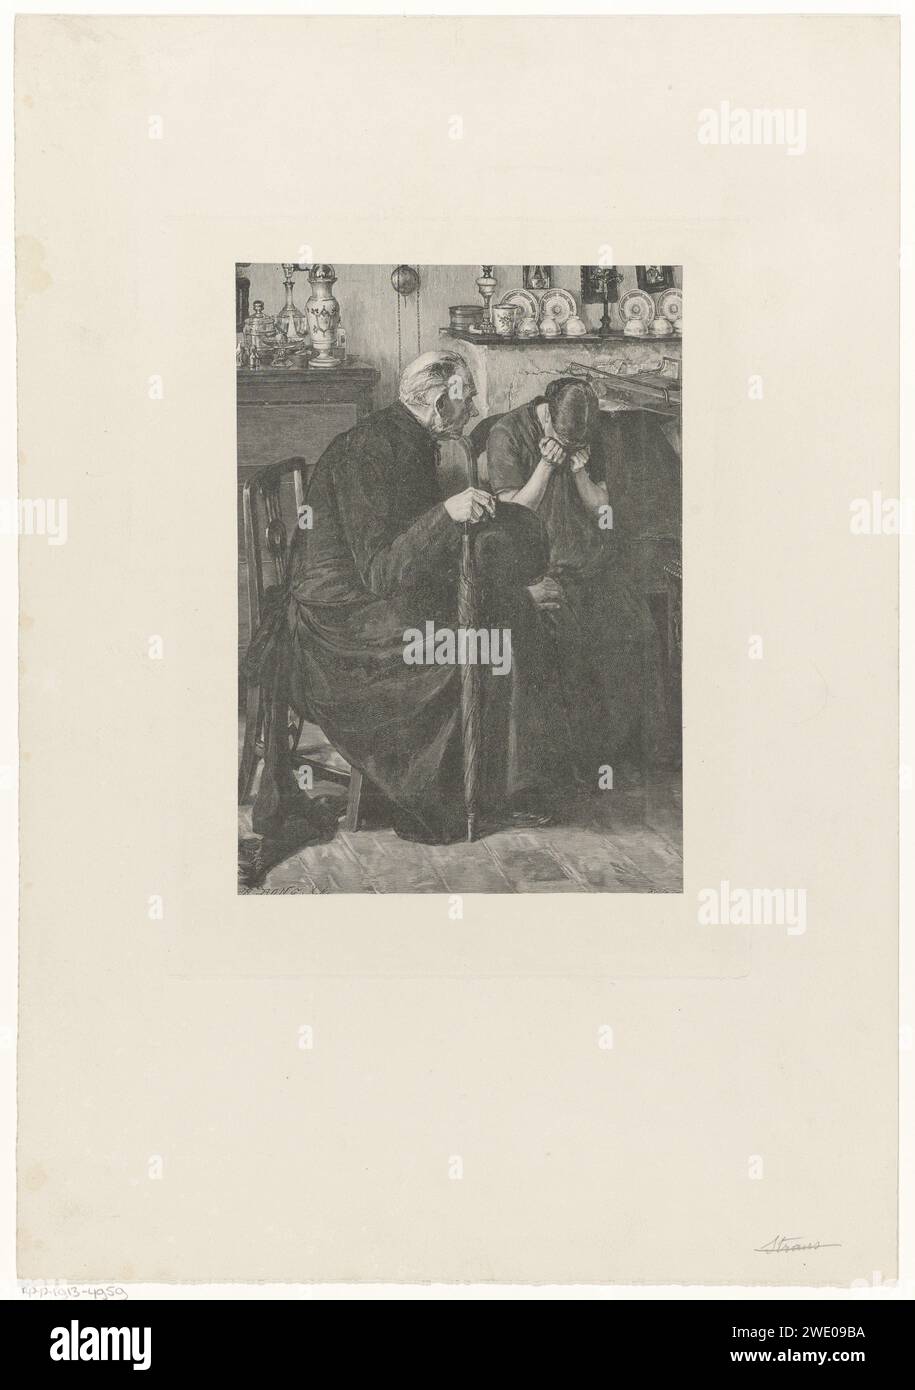 Trooster, Richard Bong, nach Rddn, 1800 - 1899 drucken Ein Mann mit einem Regenschirm und eine Frau sitzen in einer Abreise mit einem Kamin, schönem Geschirr am Kamin und einer Hängeuhr an der Wand. Die Frau weint mit dem Gesicht in einem Tuch. Der Mann legt bequem eine Hand auf ihr Knie. Niederlande Papier offenes Feuer, Kamin, Herd (in der Küche). Regenschirm. Uhr. Weinen Stockfoto